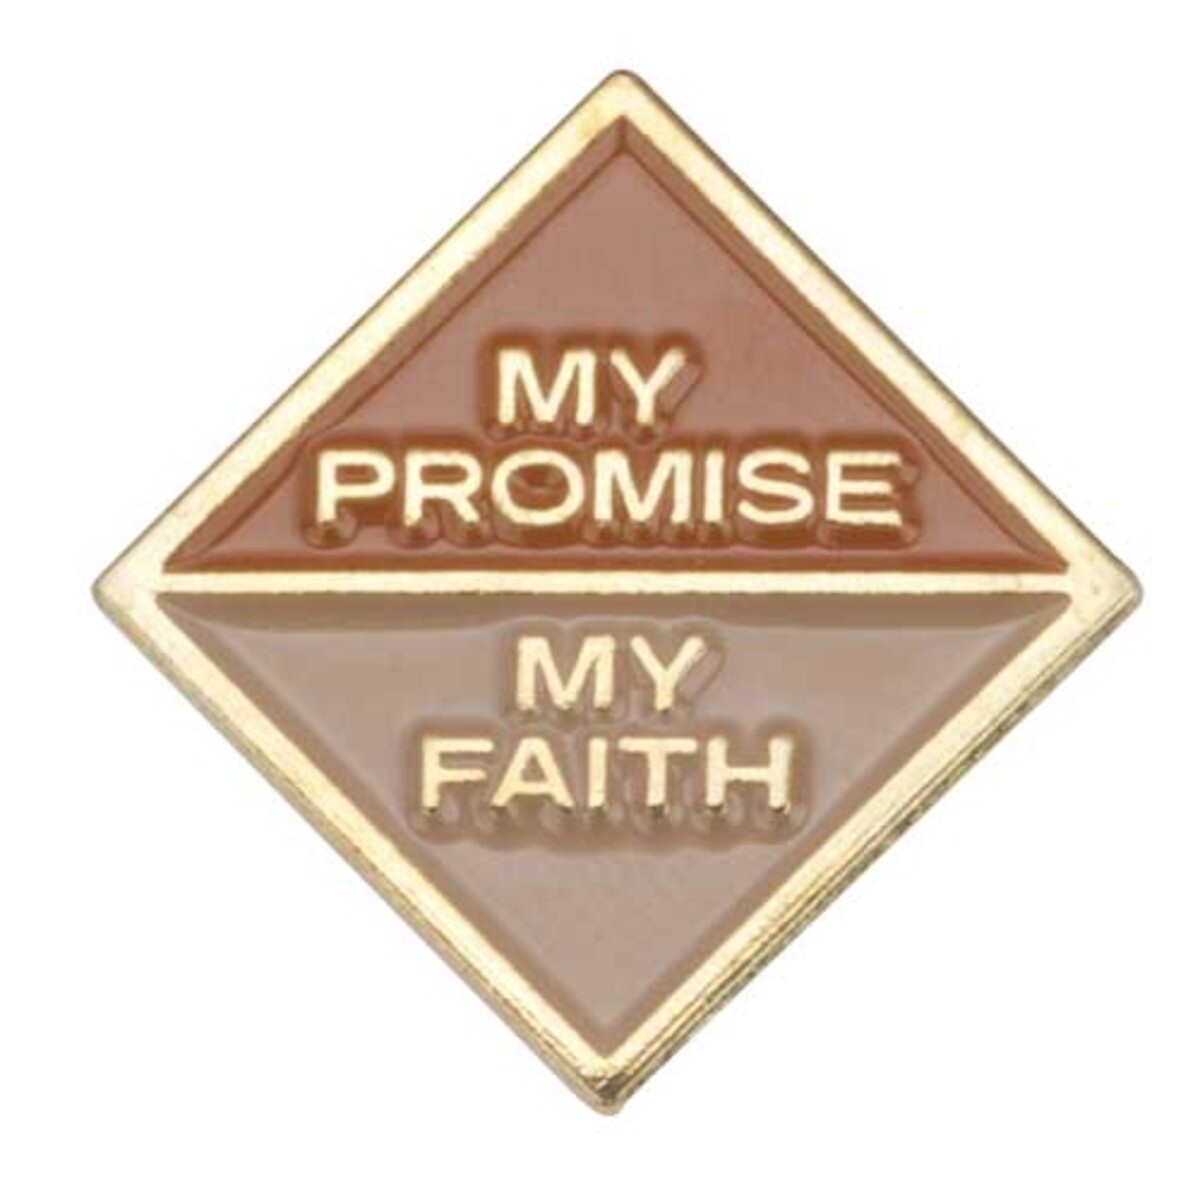 Brownie My Promise, My Faith Pin - Year 2